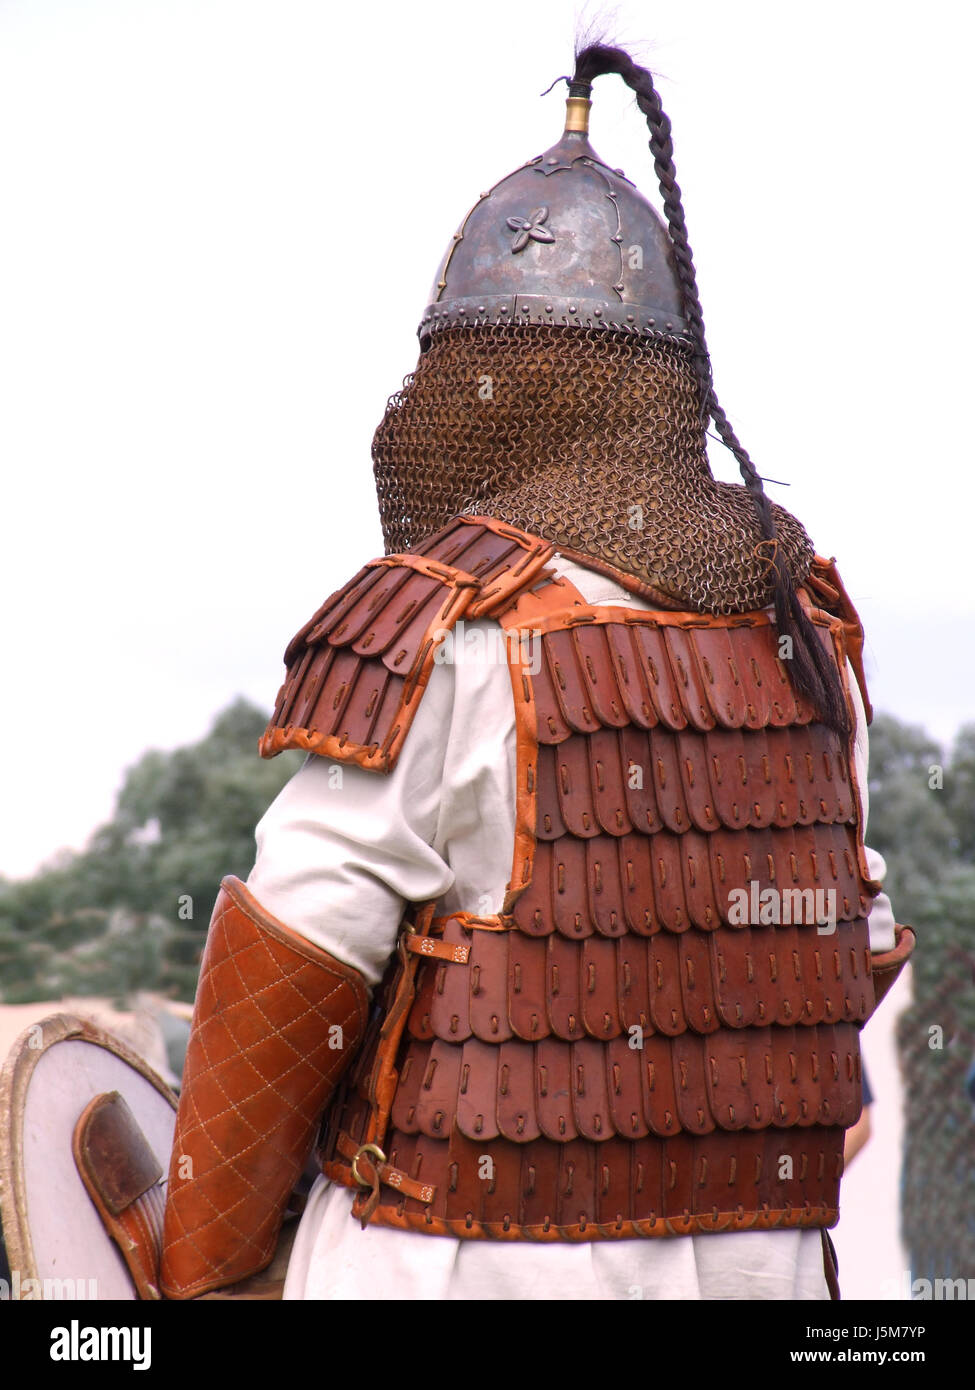 Fuseaux casque historique jeu de rôle viking vikings lederweste wikingerfest Banque D'Images